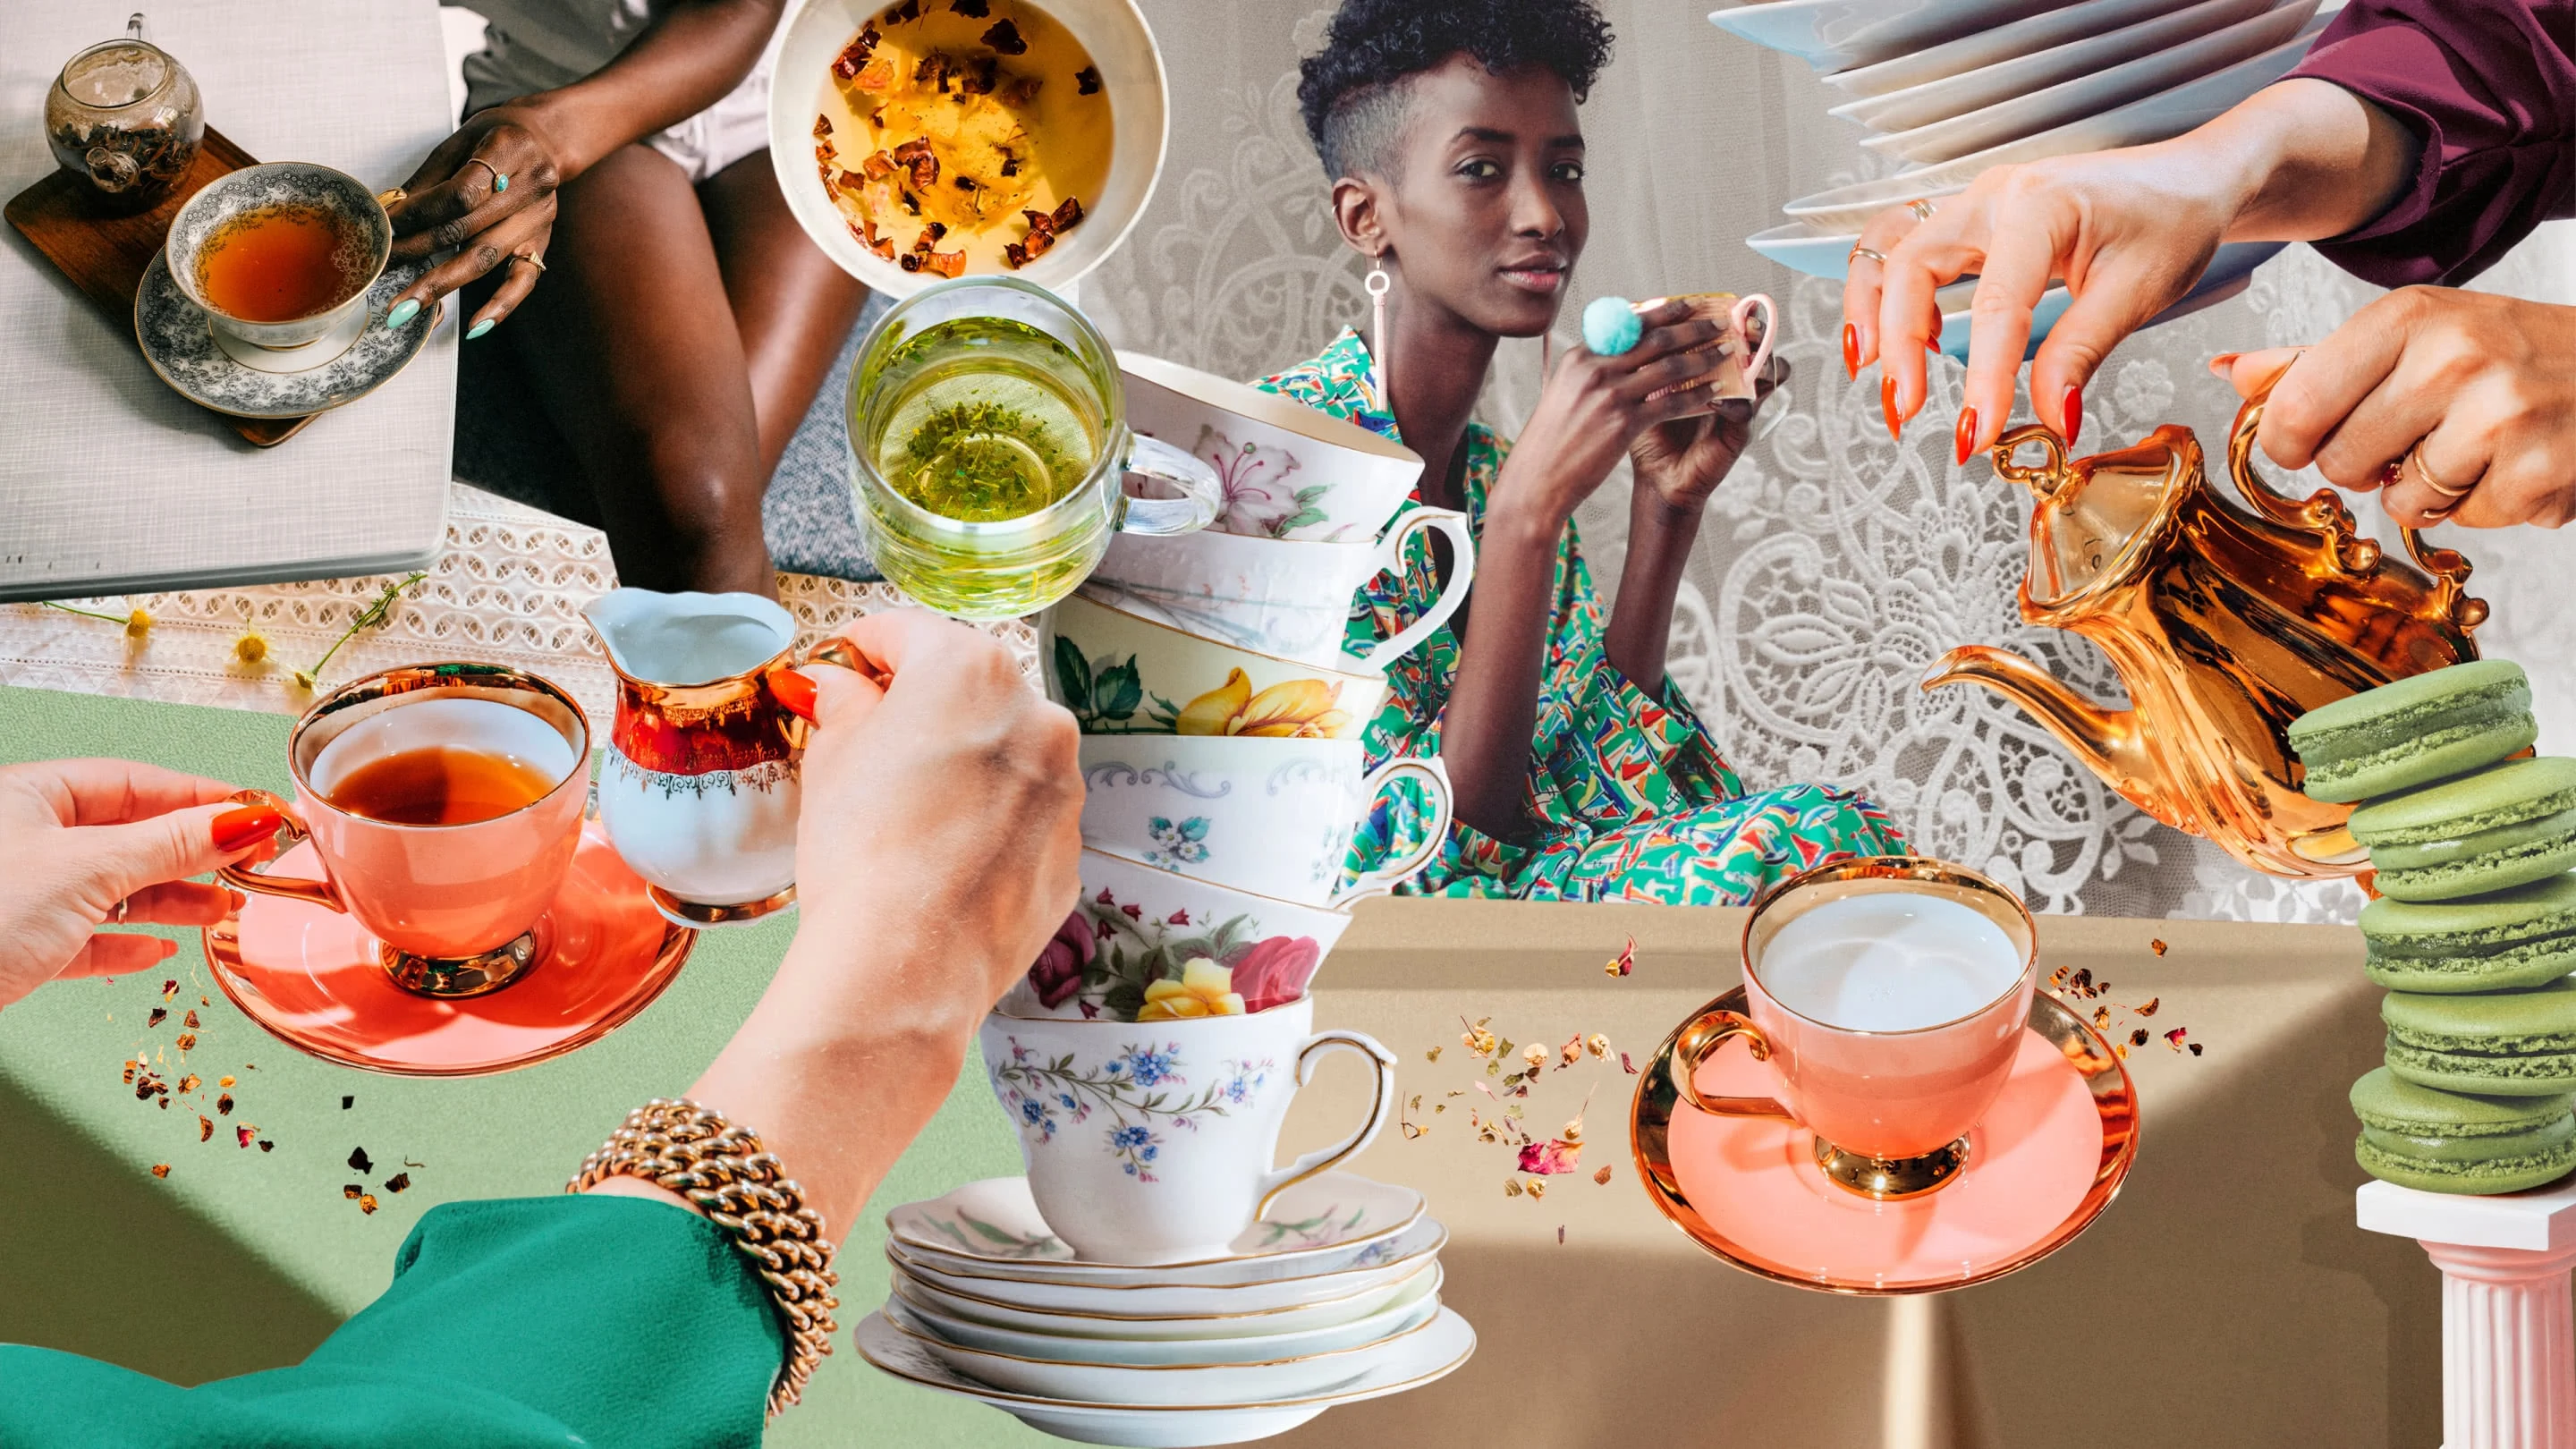 Colagem colorida com xícaras de chá antigas empilhadas, pratos e macarons verdes, várias mãos posicionadas com cremeiras acima de xícaras de chá âmbar e uma mulher negra com roupa verde ao centro, olhando para a câmera e segurando uma xícara dourada